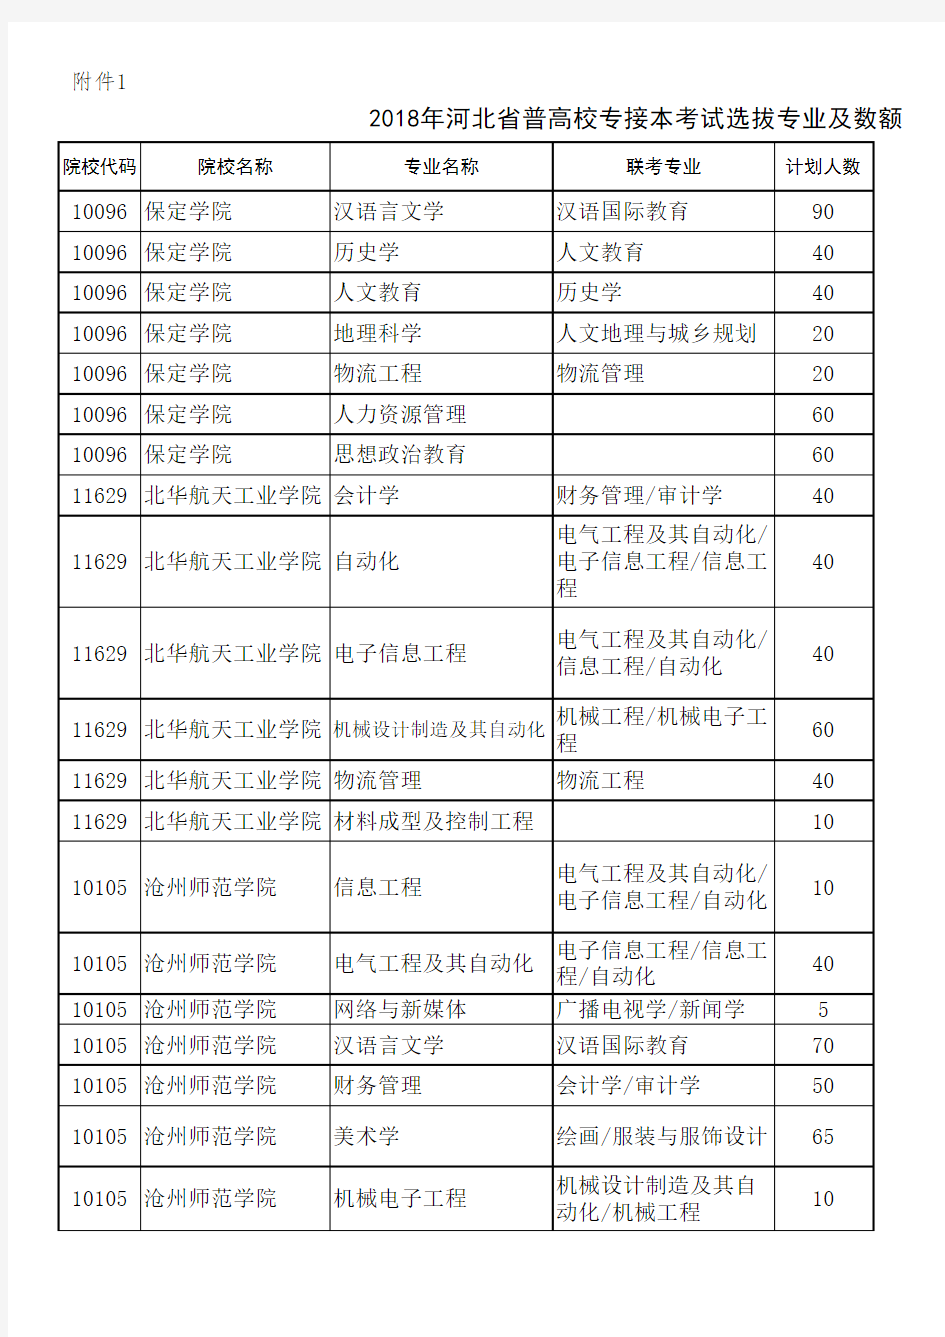 2018年河北省普通高校专接本考试选拔专业及数额